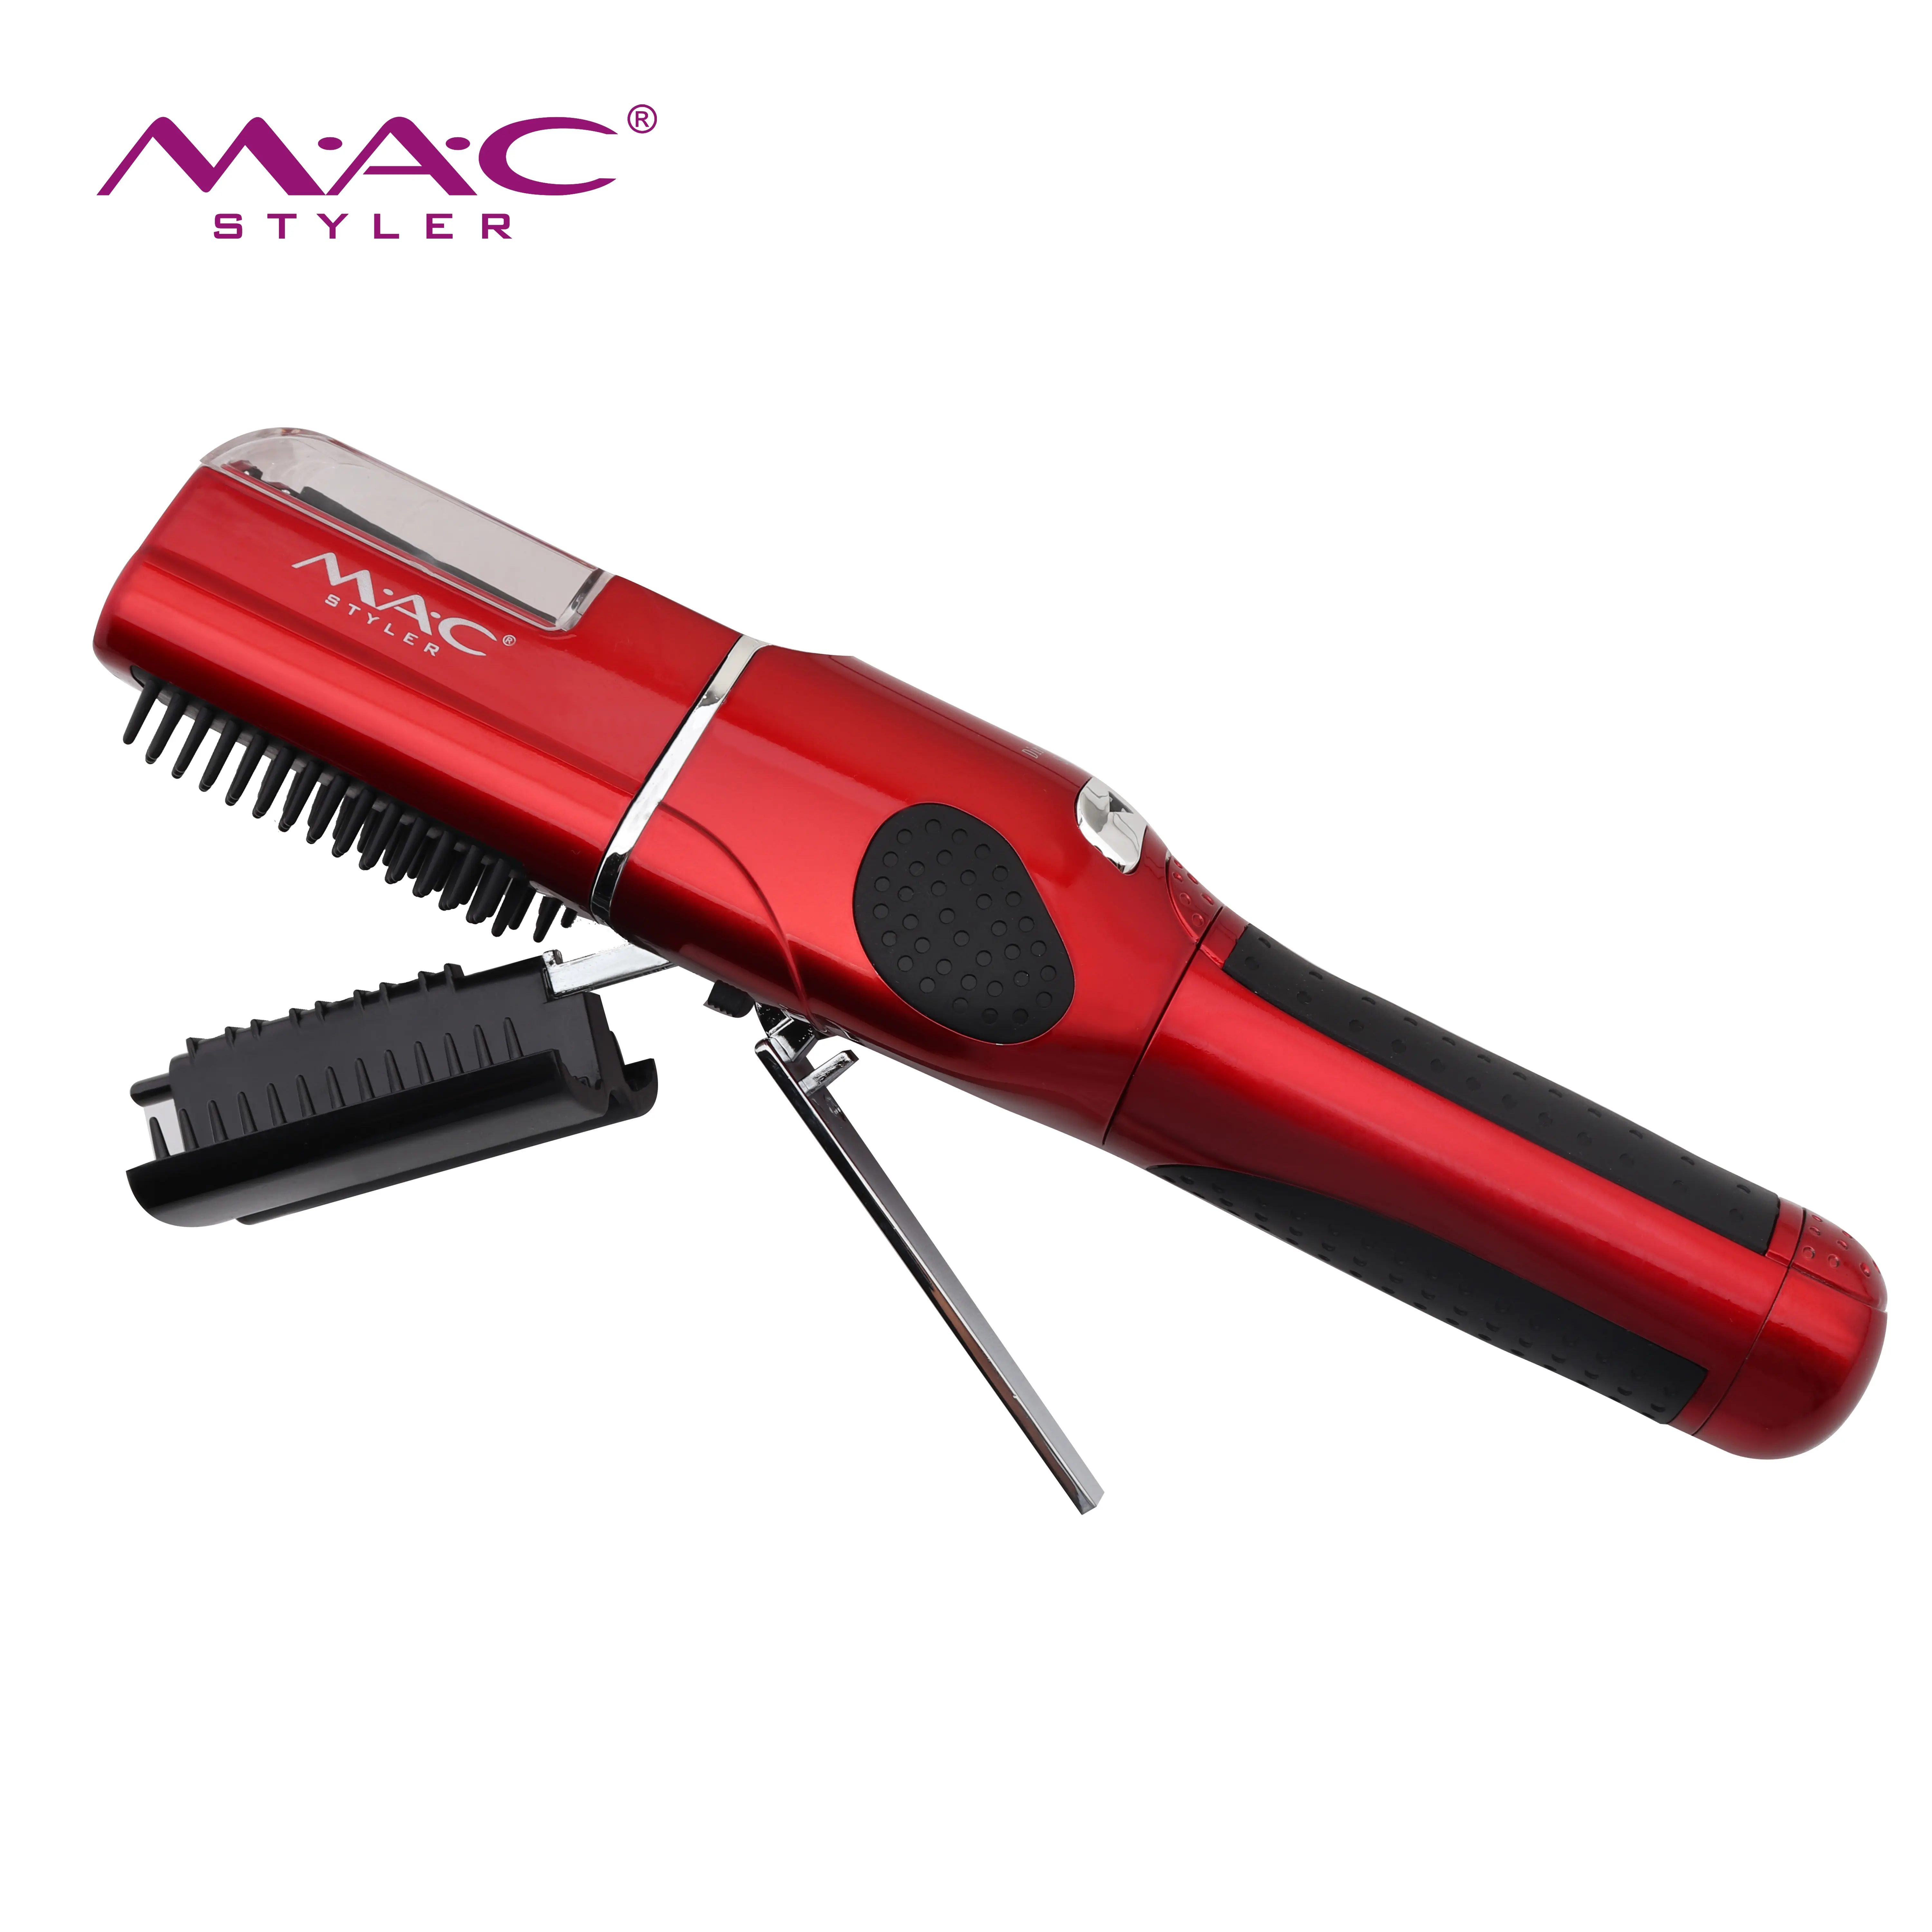 Máquina de cortar cabelo MAC Styler para salão de beleza, aparador de cabelo profissional sem fio cor dourada para homens